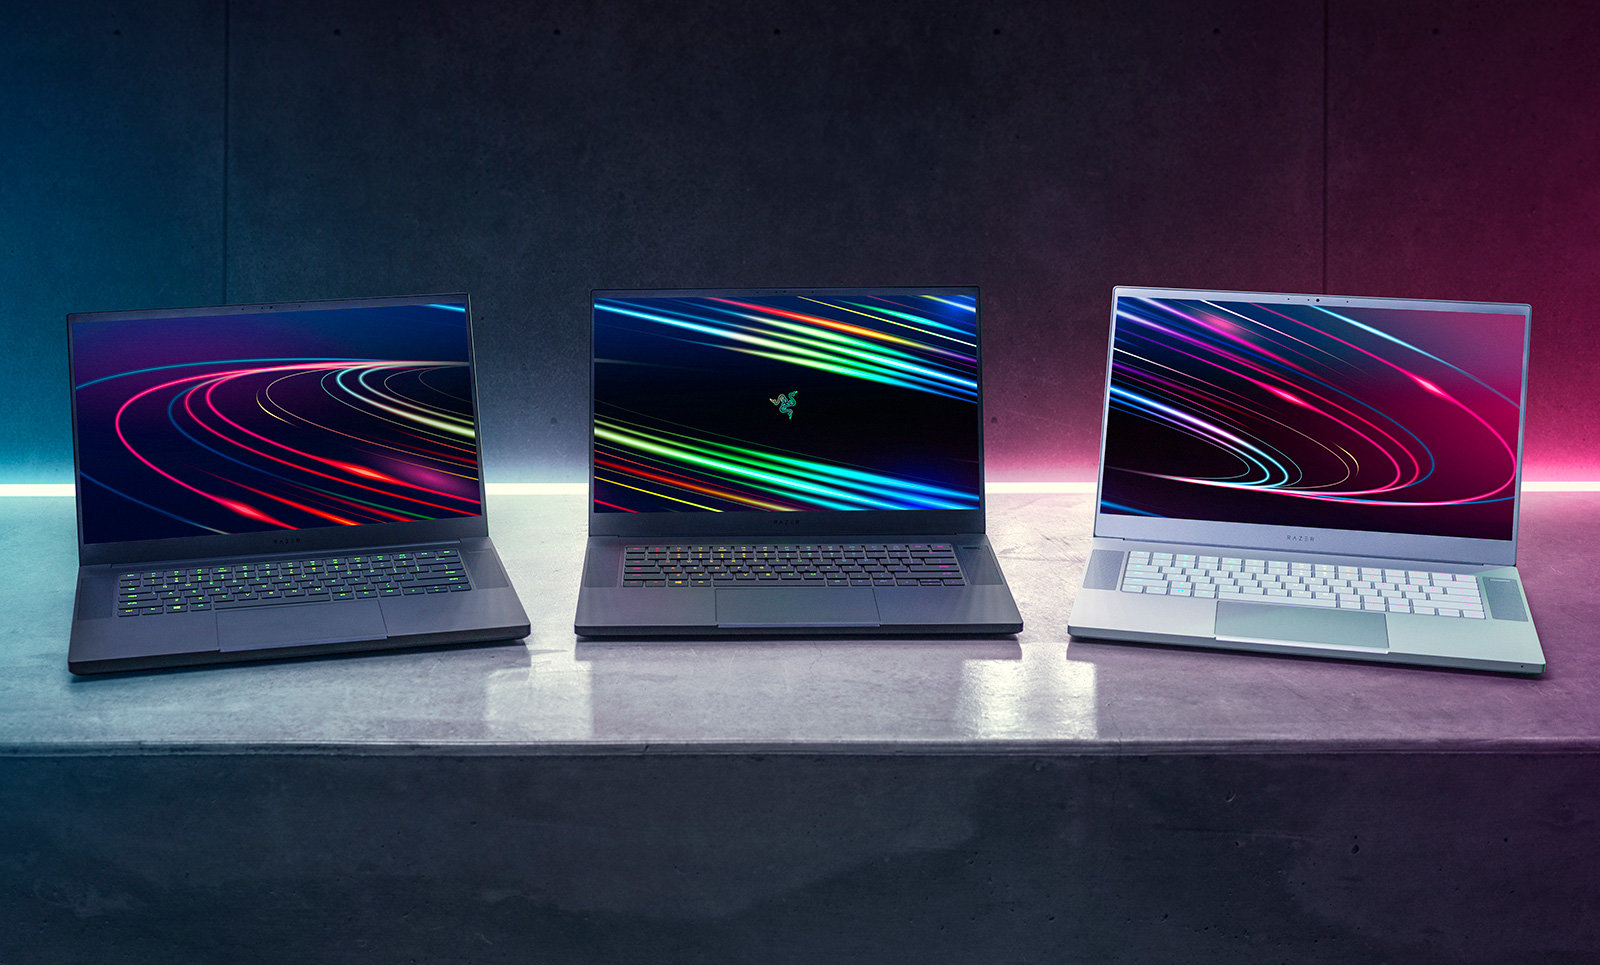 Razer ra mắt laptop Blade 15 2020 mới với CPU Intel 8 nhân và RTX 2080 Super